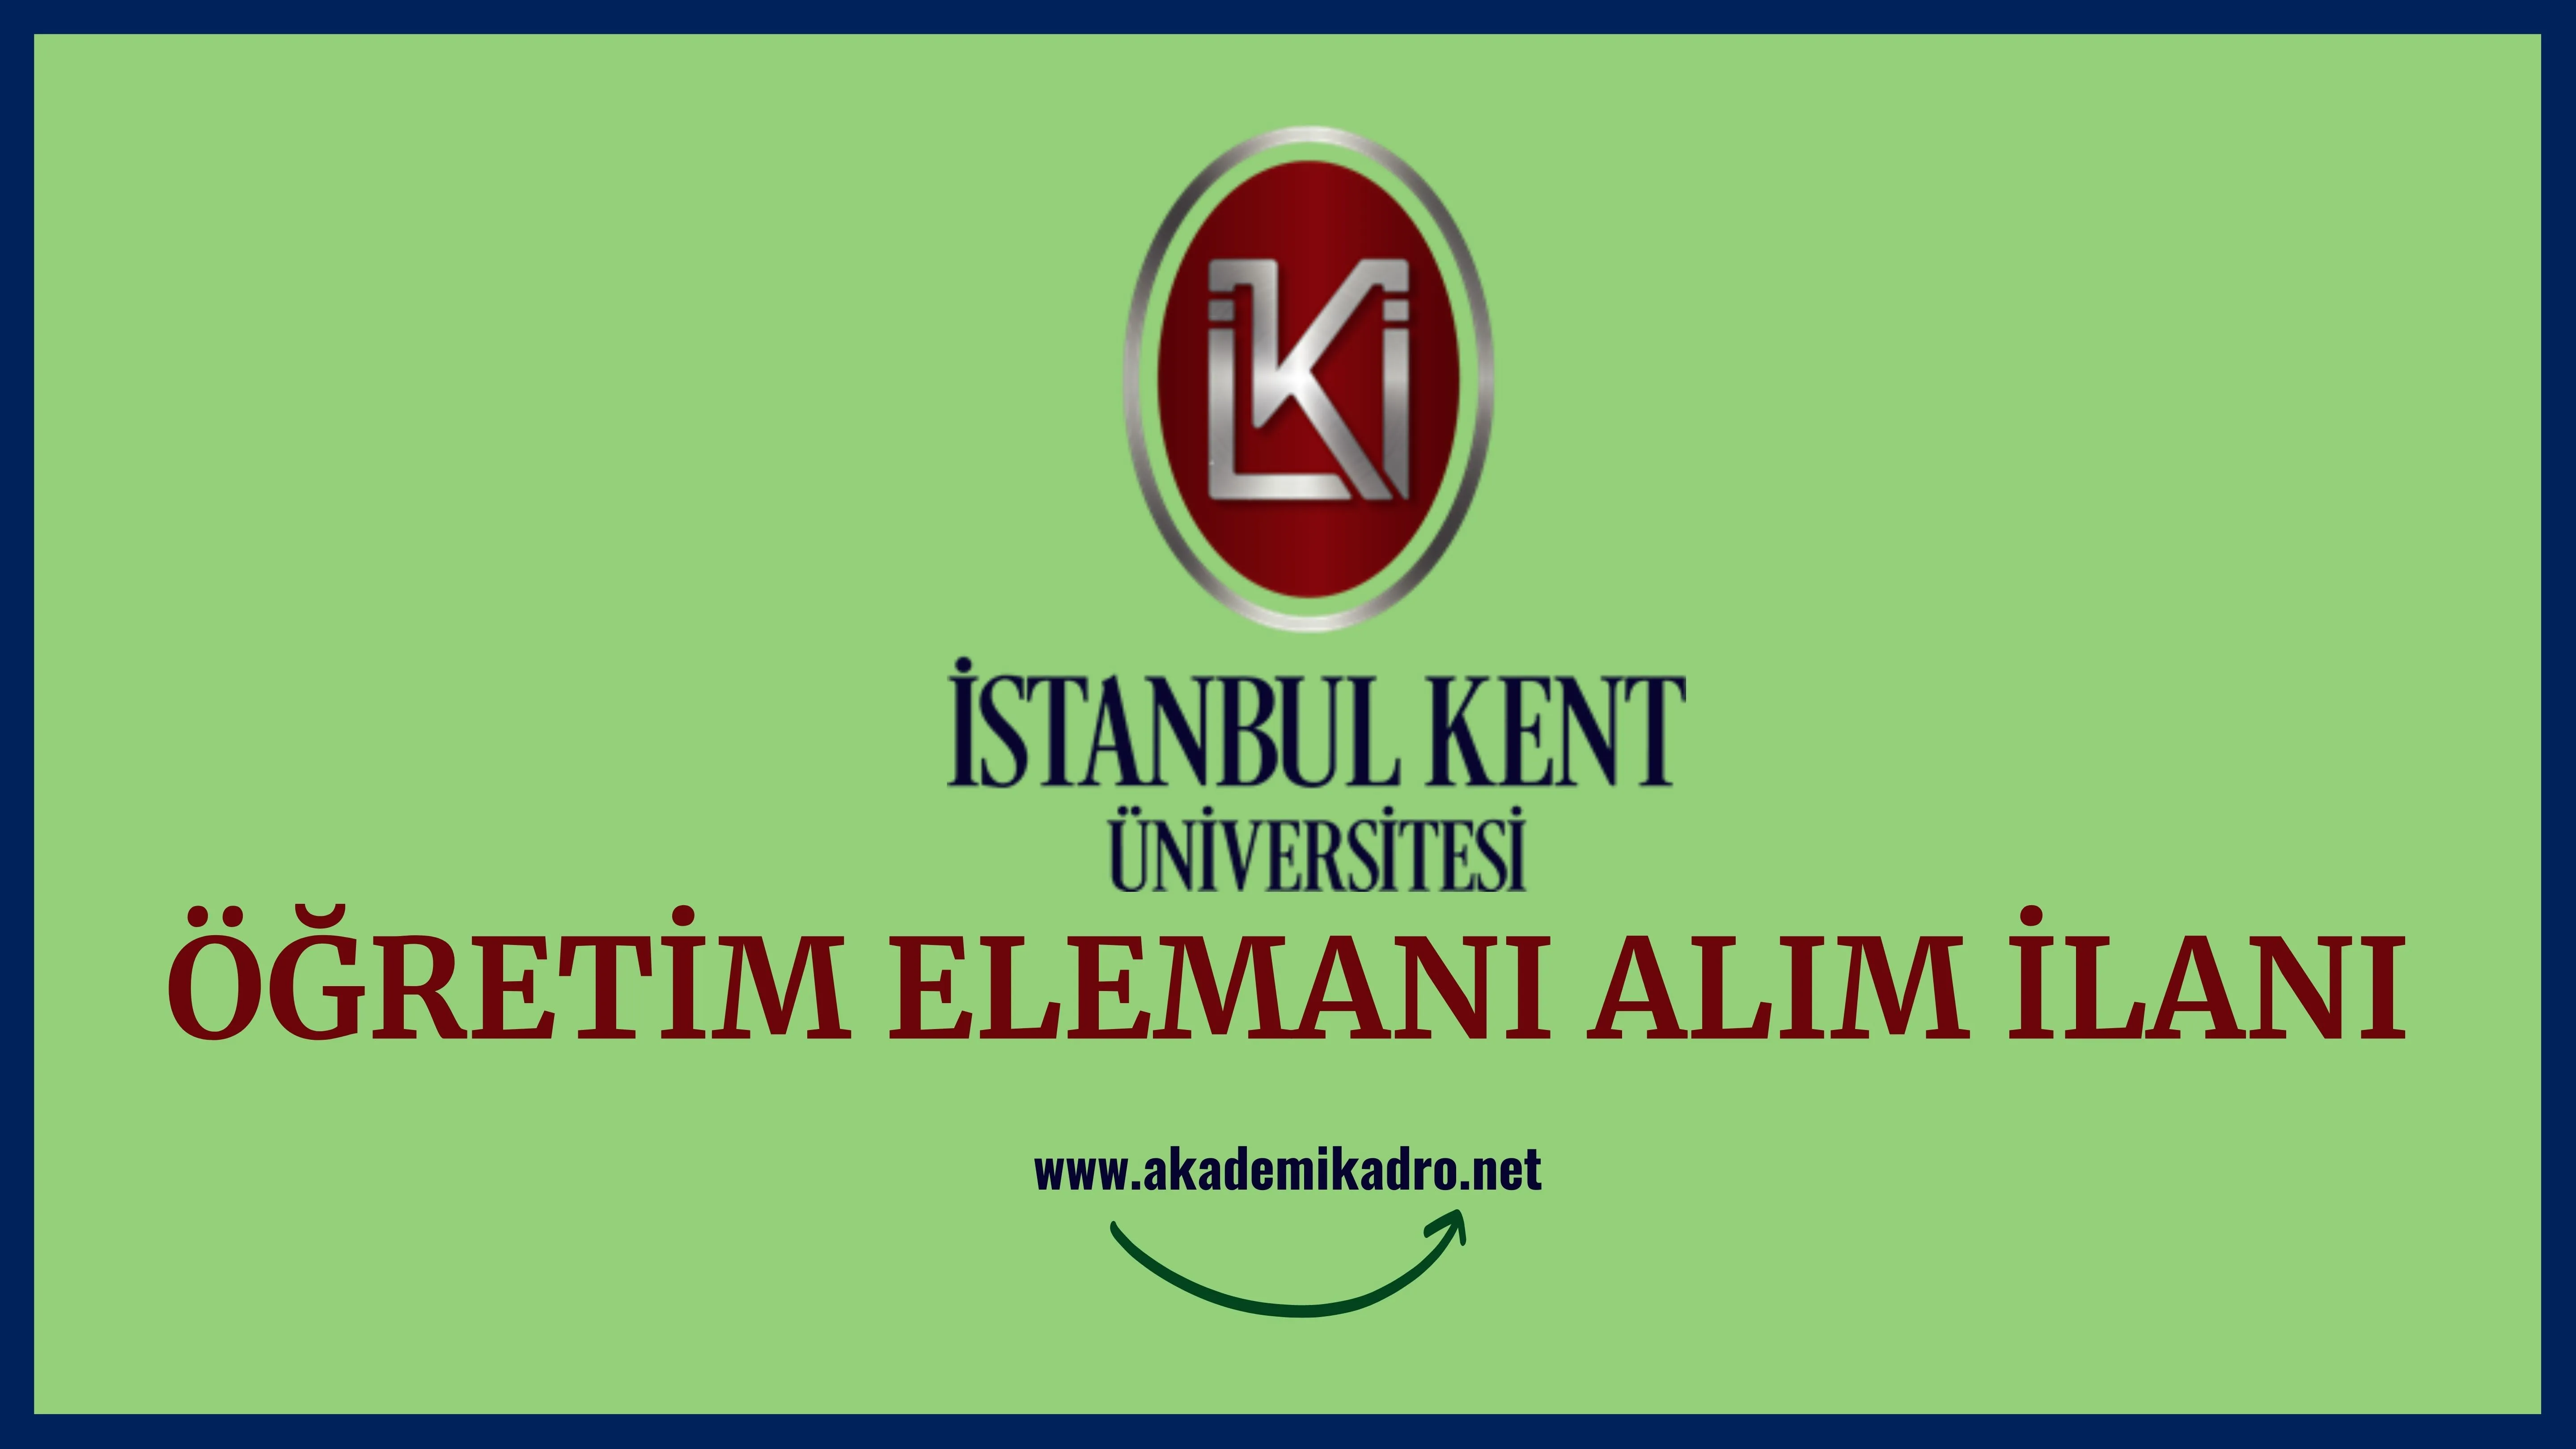 İstanbul Kent Üniversitesi 5 öğretim görevlisi, 7 Araştırma görevlisi ve çok sayıda öğretim üyesi alacaktır.